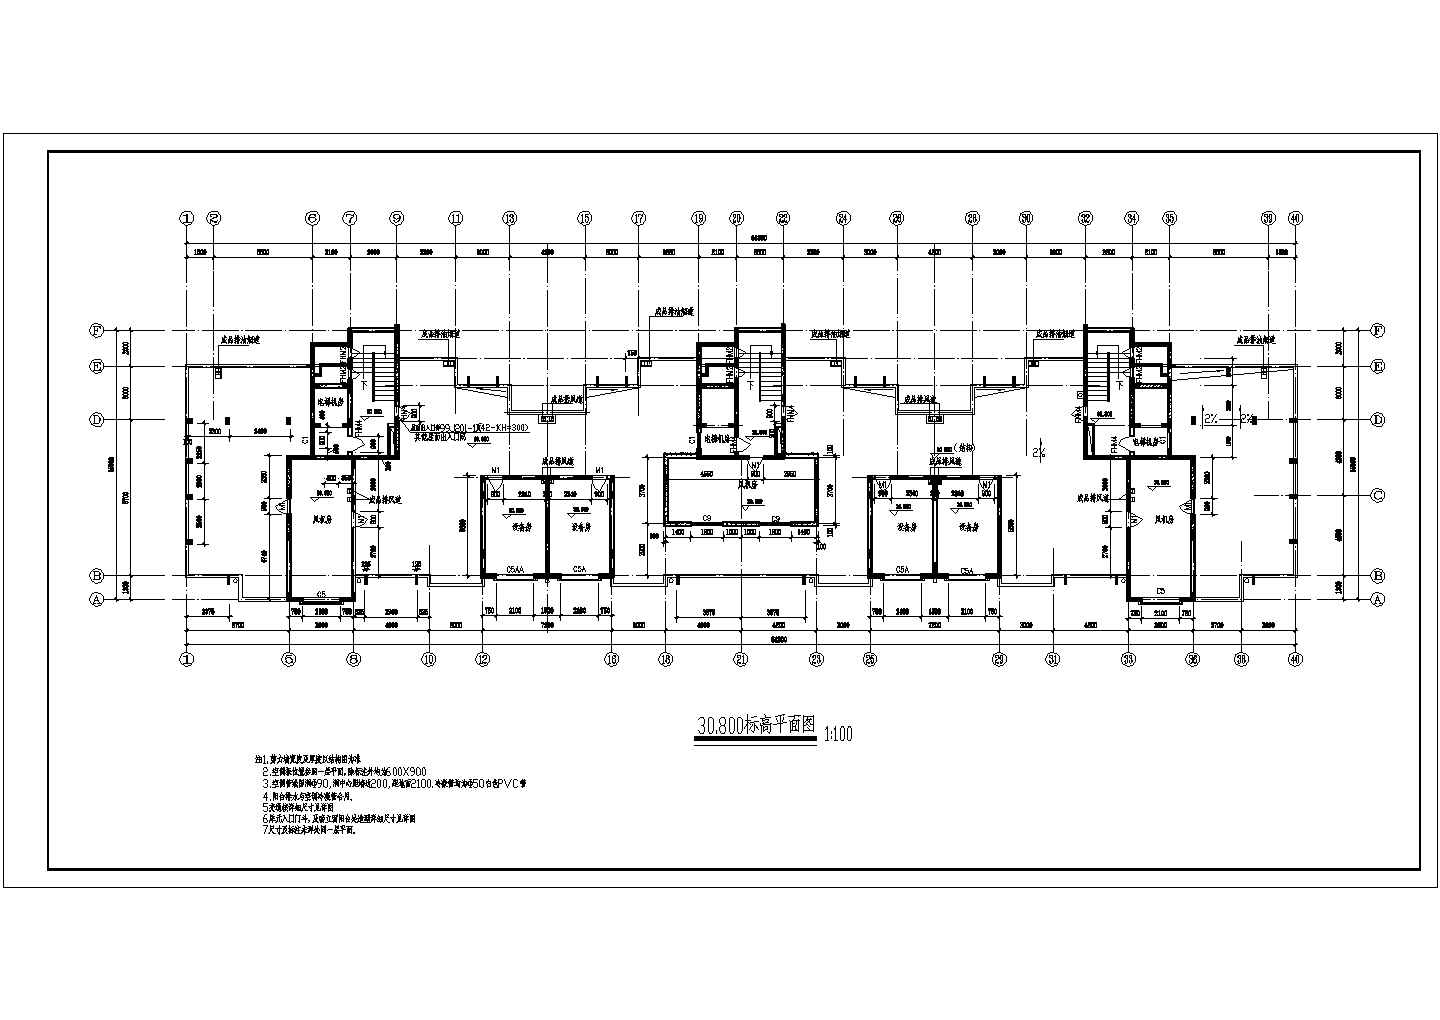 江城逸品高层住宅小区16栋楼全套施工设计CAD图纸